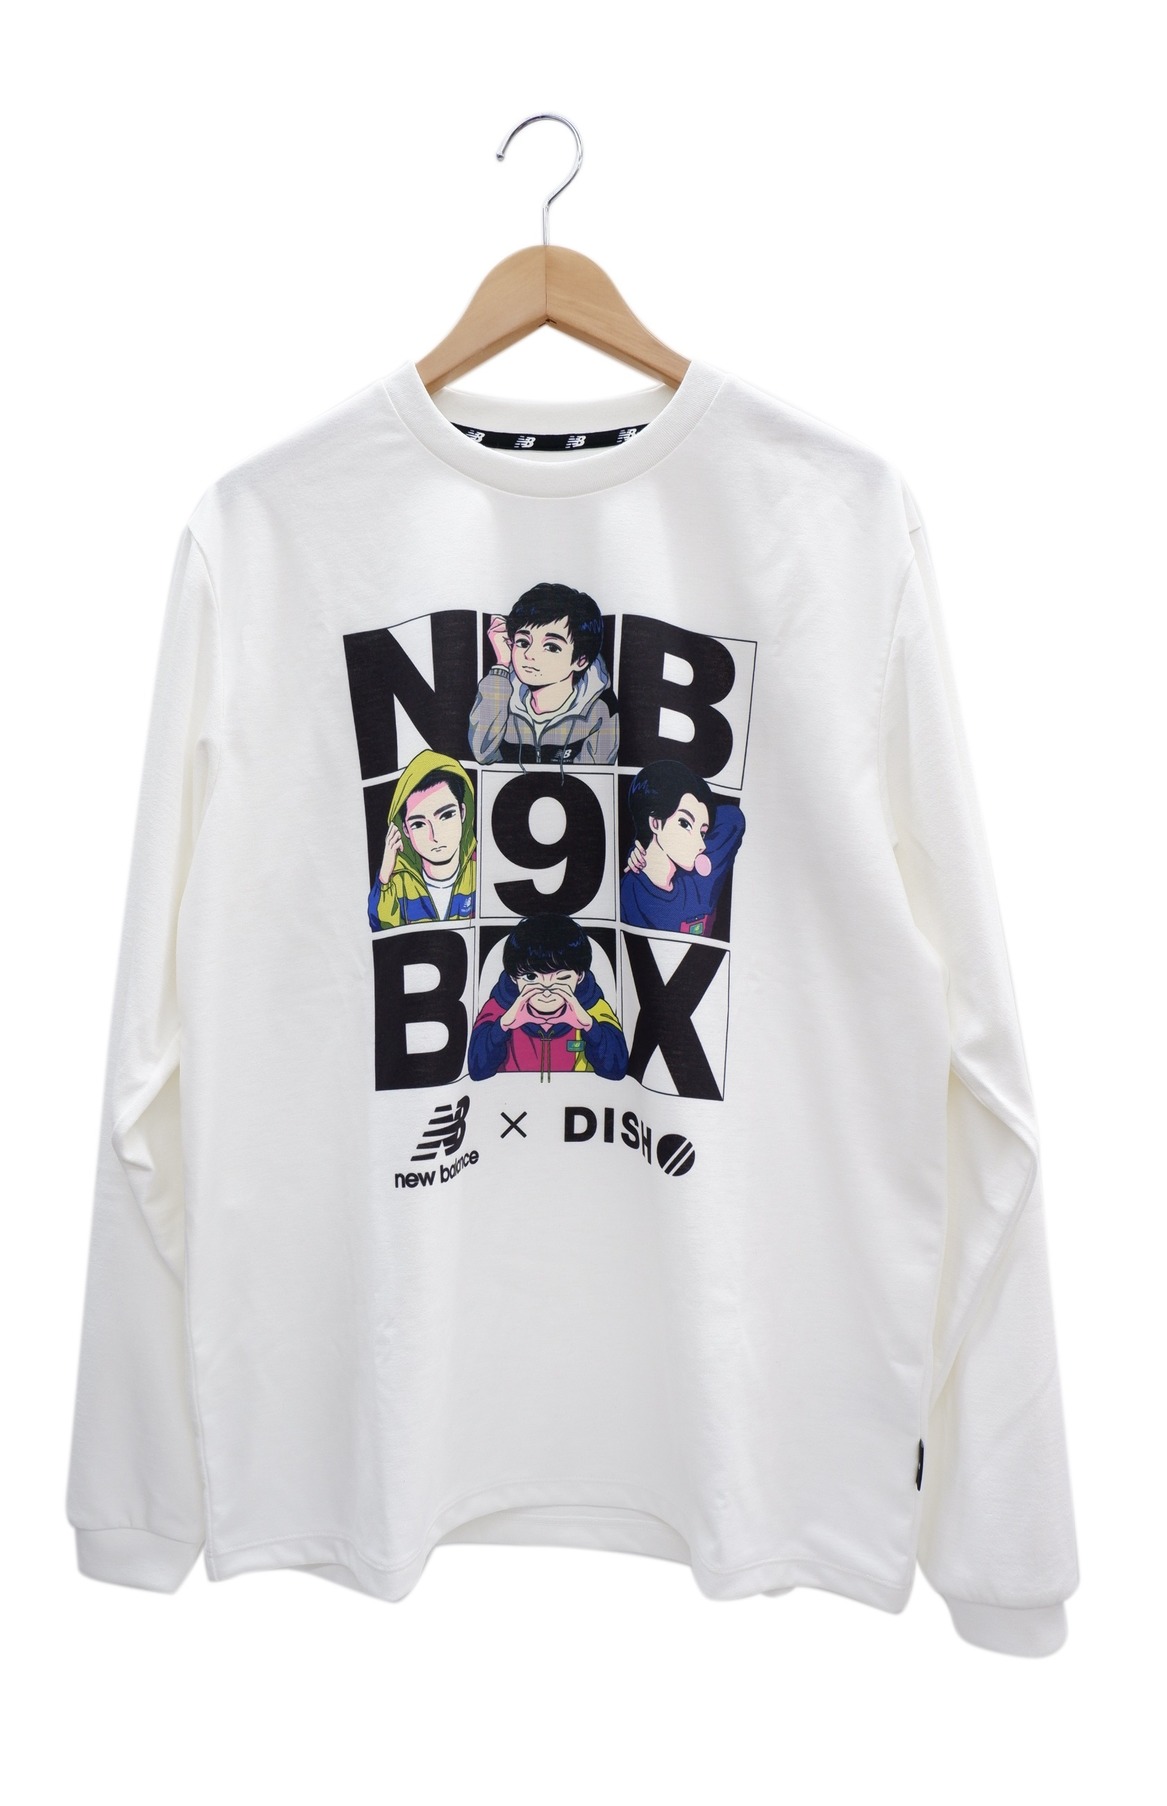 中古・古着通販】NEW BALANCE (ニューバランス) Tシャツ DISH//9BOX ...